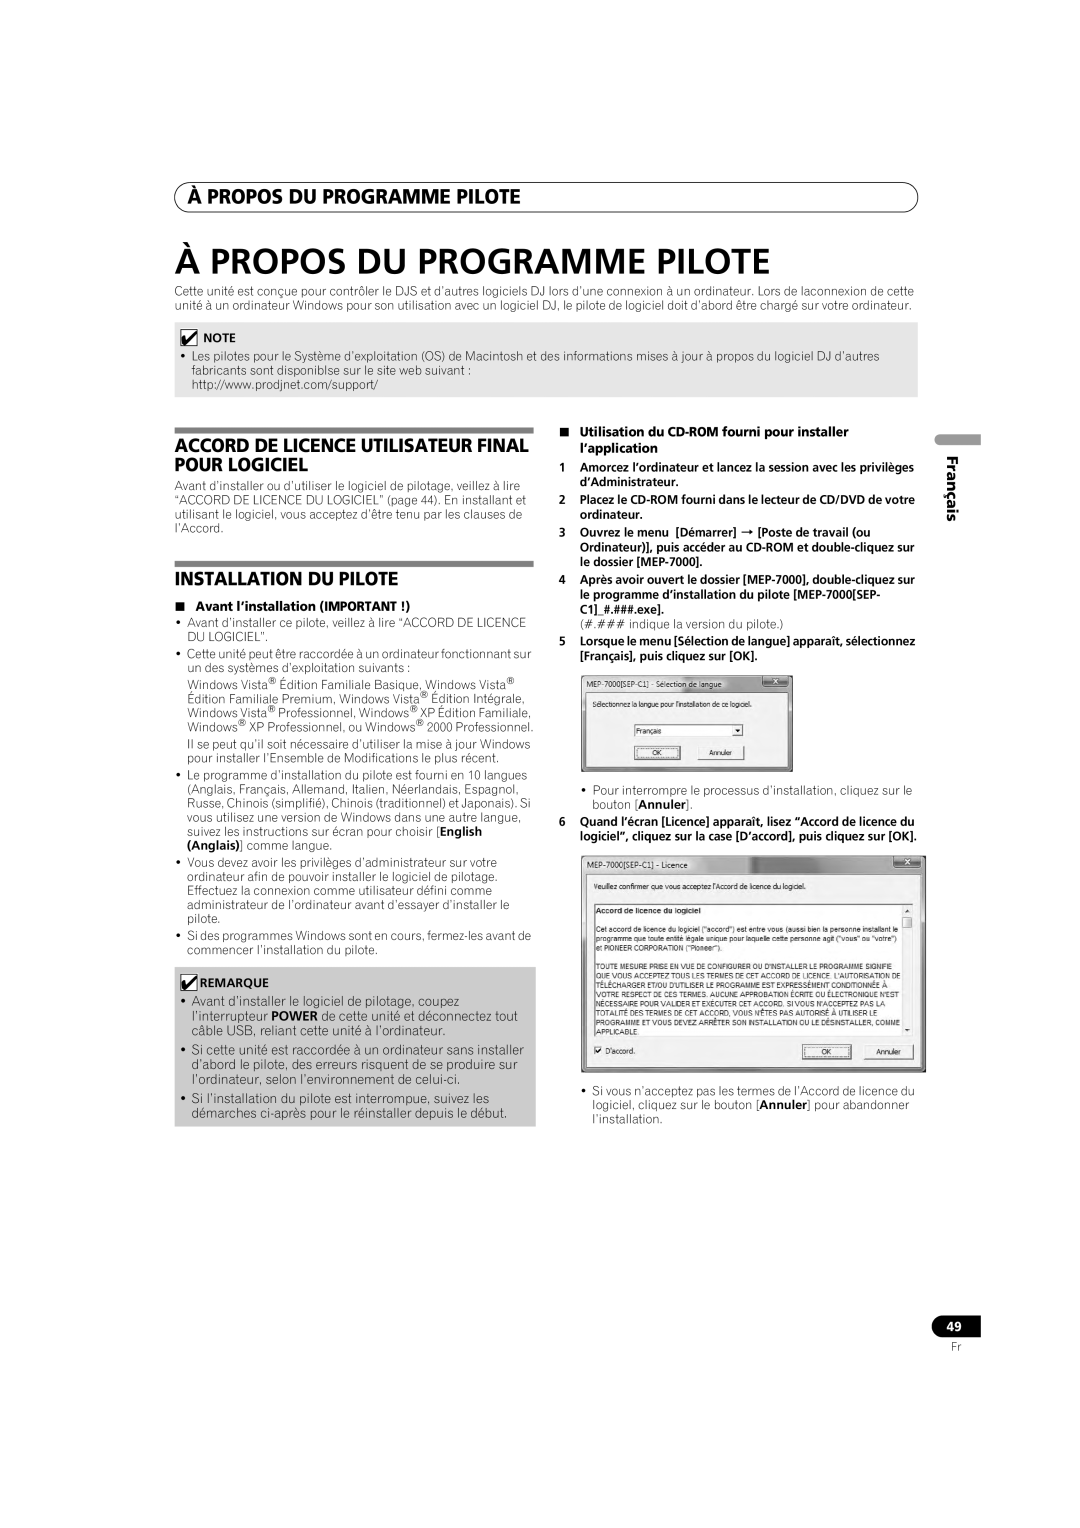 Pioneer MEP-7000 Àpropos Du Programme Pilote, Accord De Licence Utilisateur Final Pour Logiciel, Installation Du Pilote 